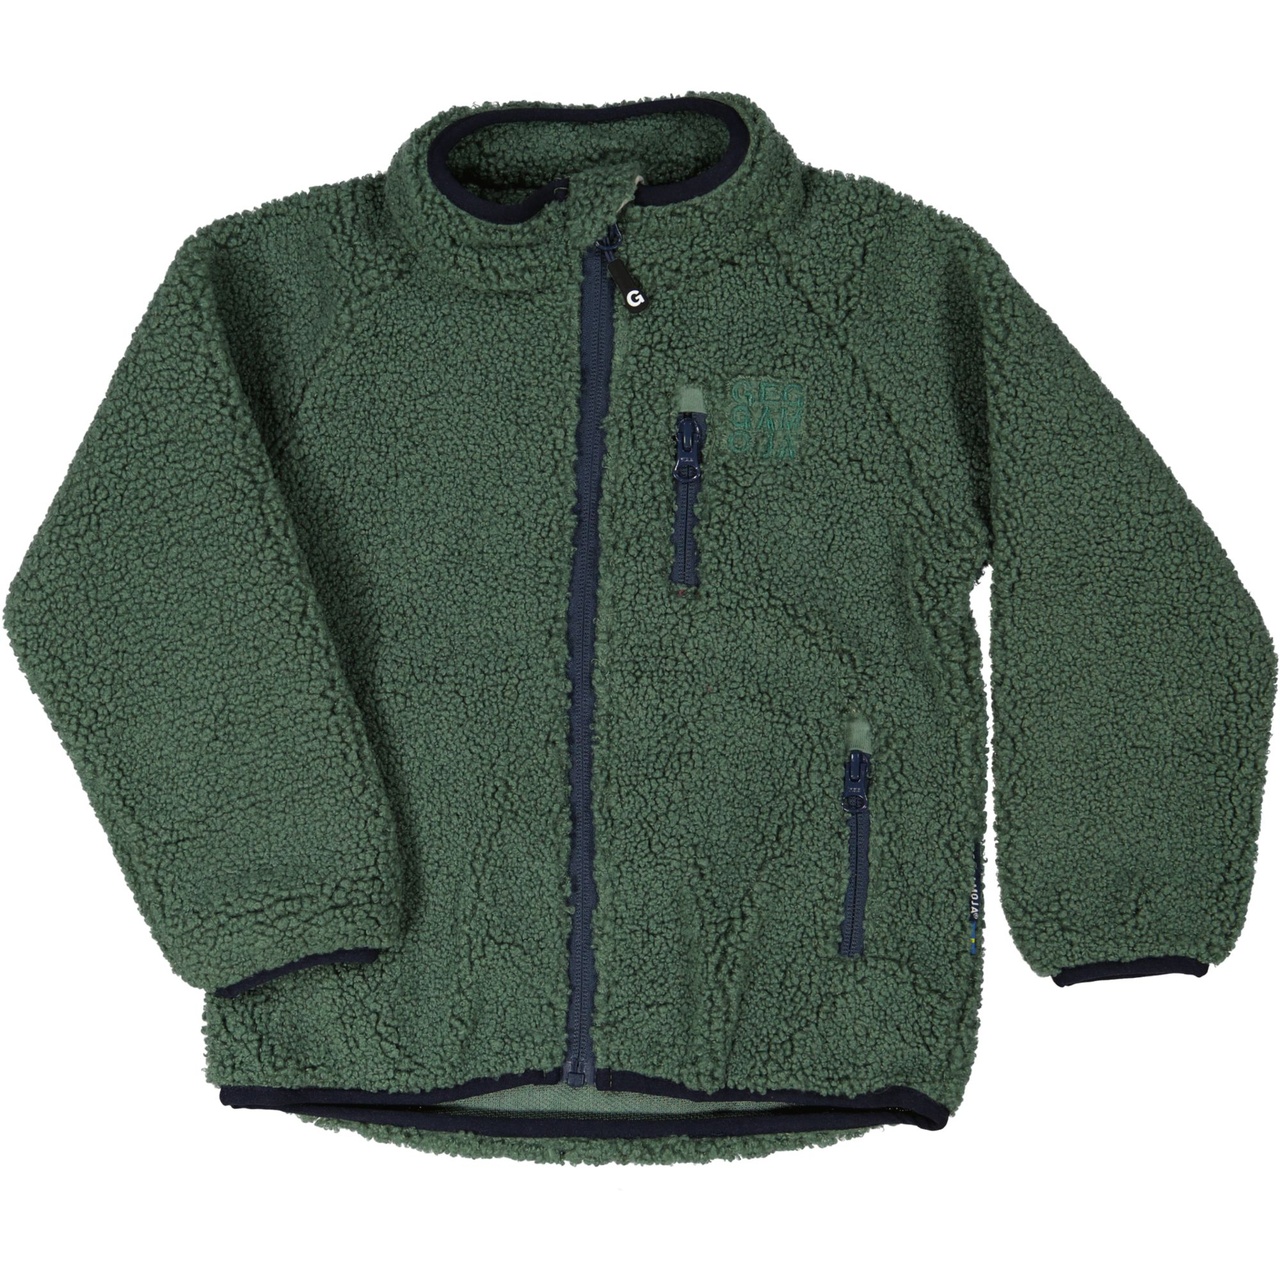 Pile jacket Moss green  86/92